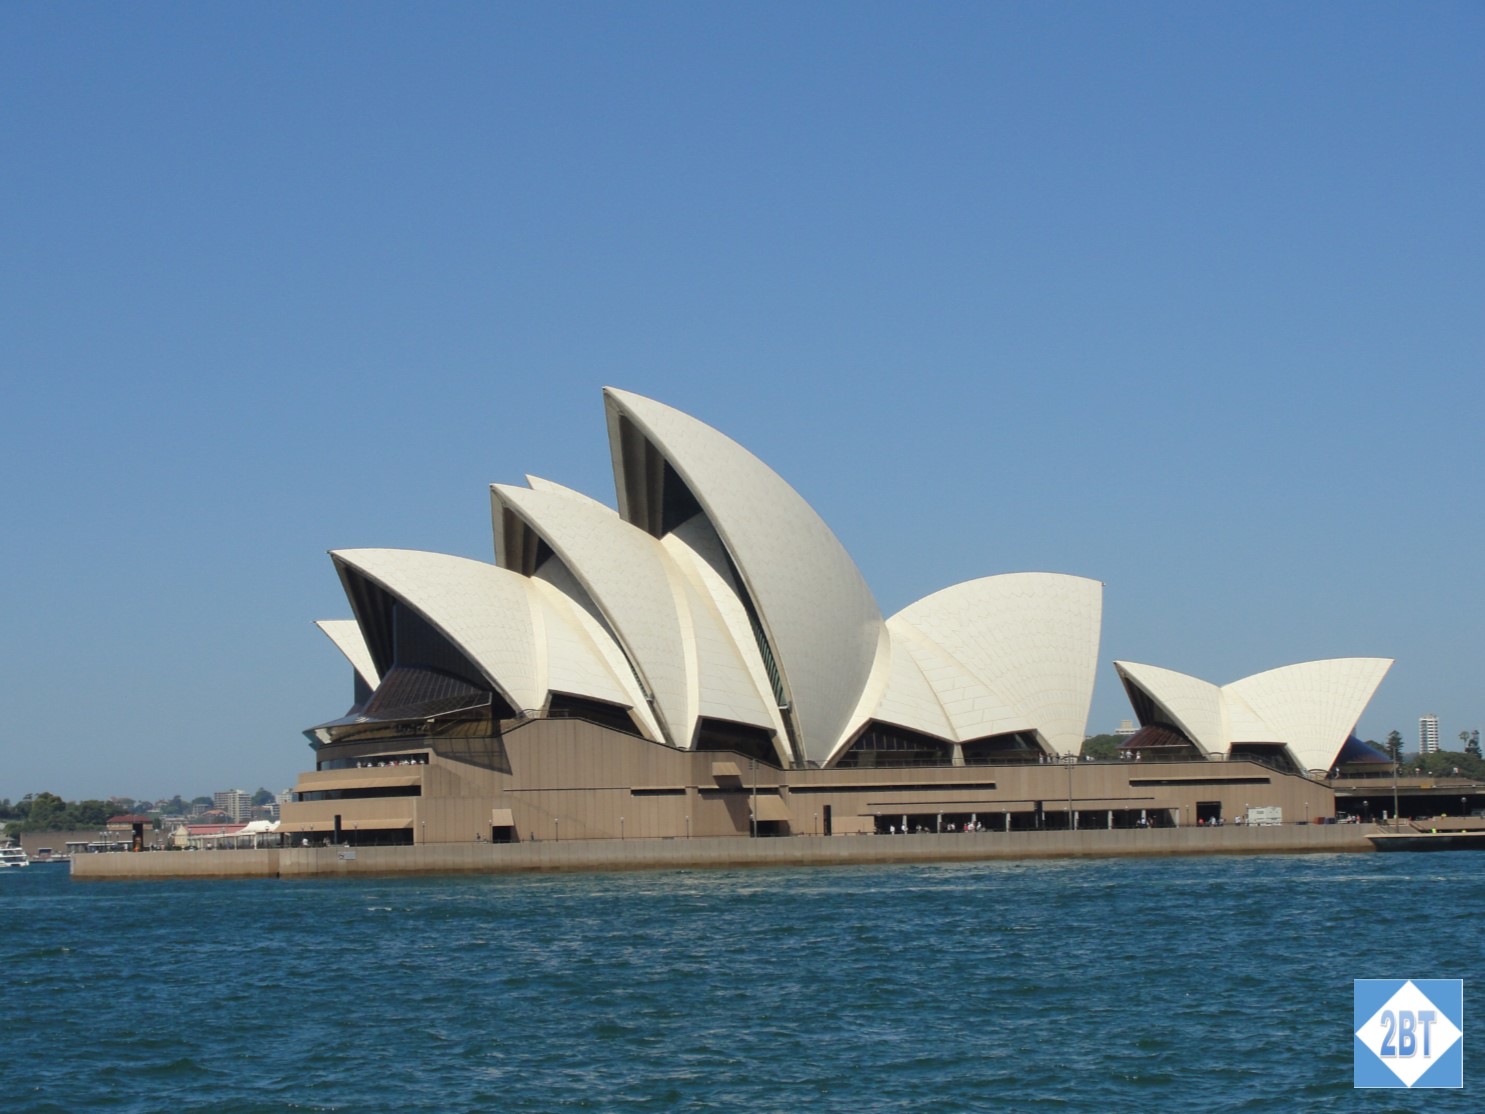 SPB Sydney Opera House 2B Traveling